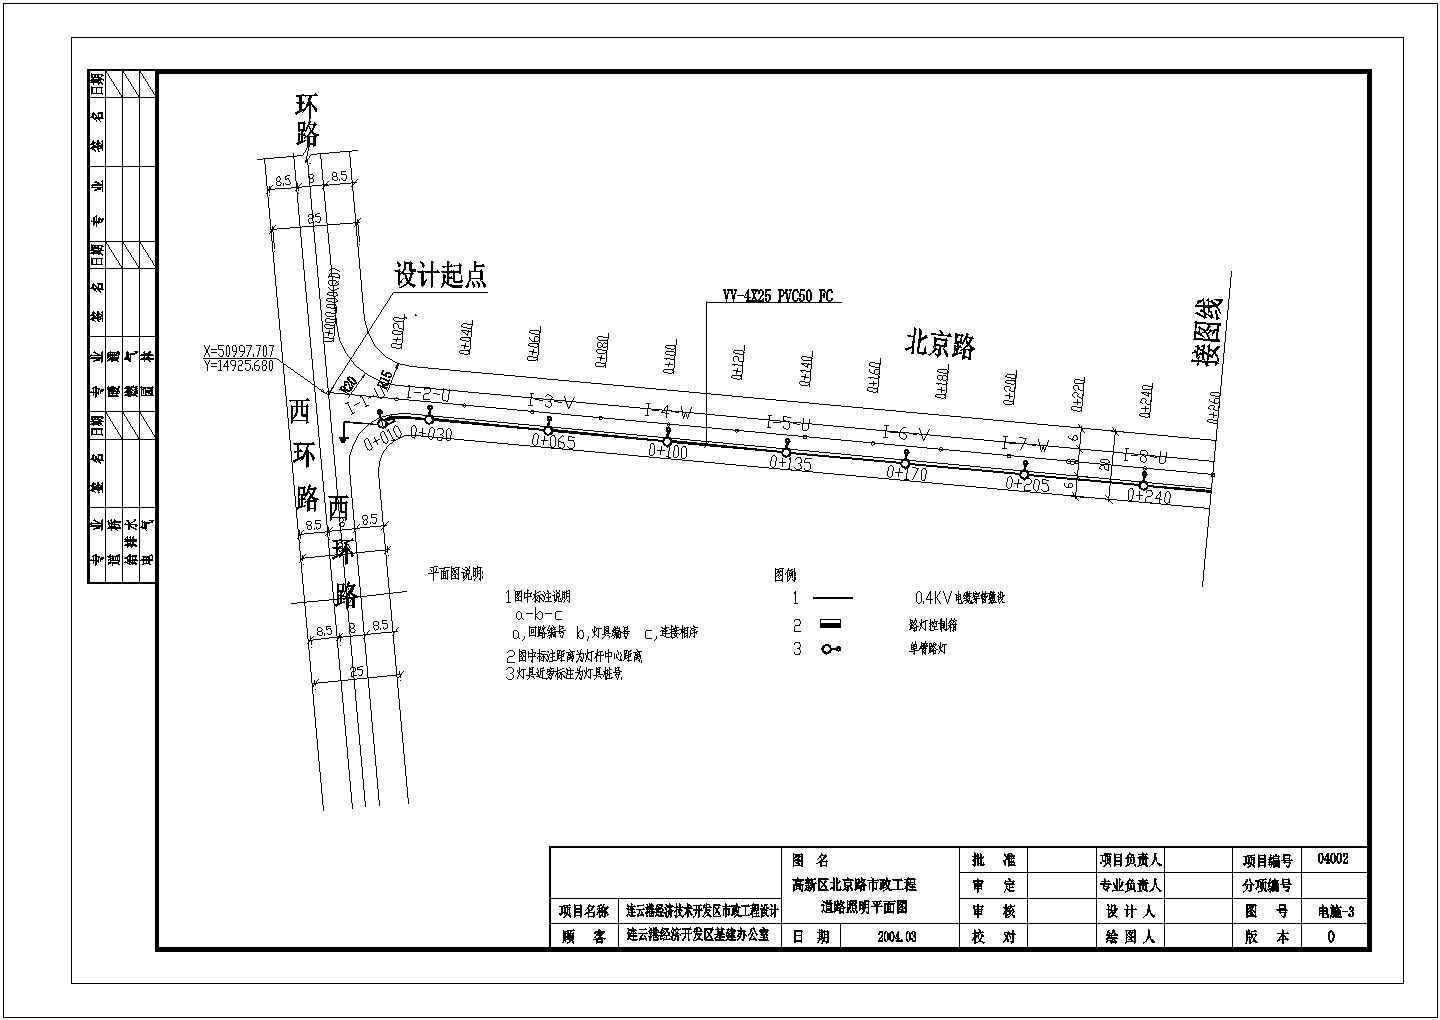 高新区北京路市政工程施工图